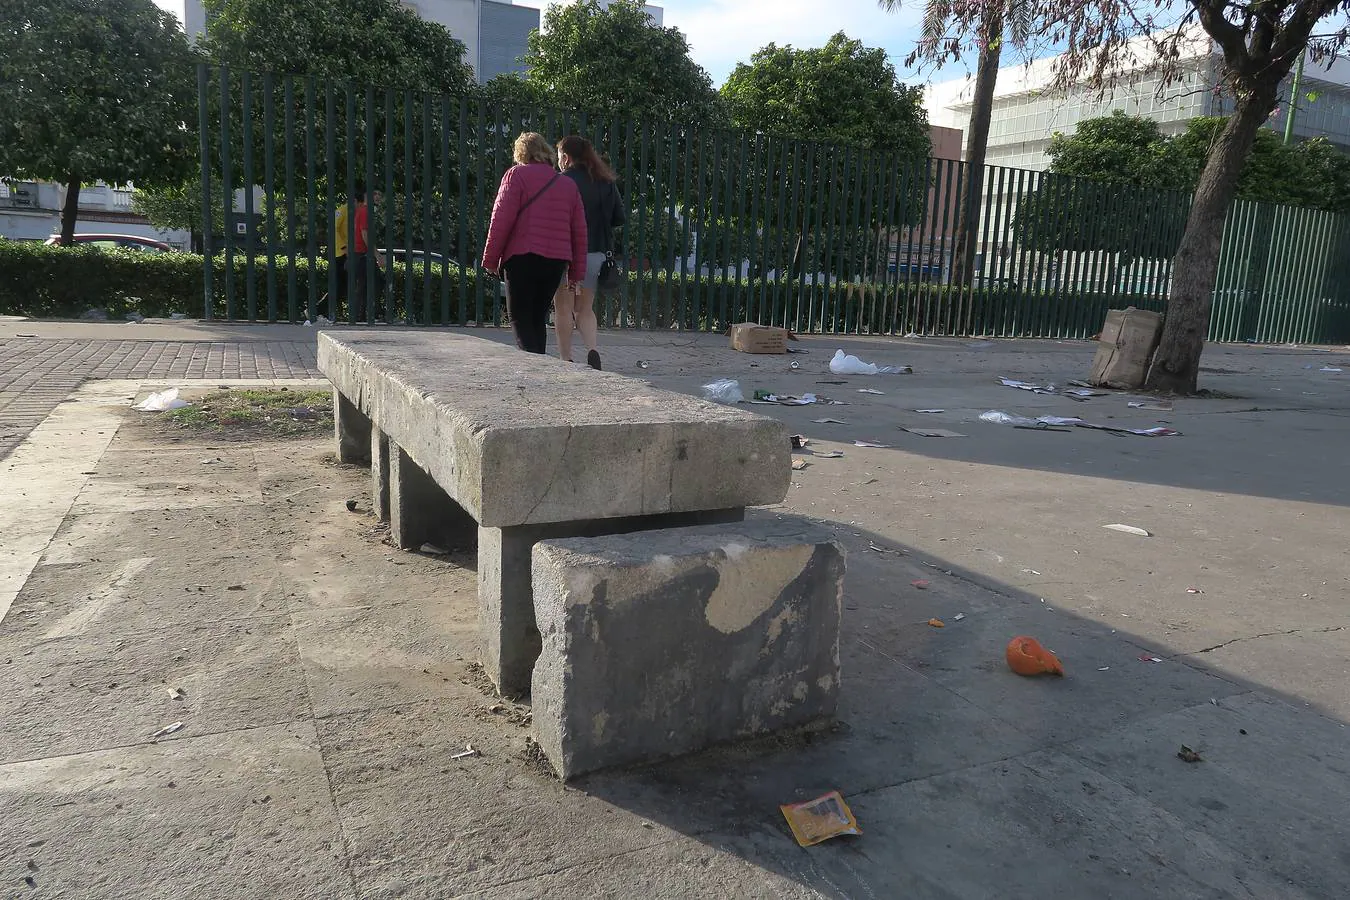 Abandono y vandalismo se hacen crónicos en parques y zonas verdes de Sevilla